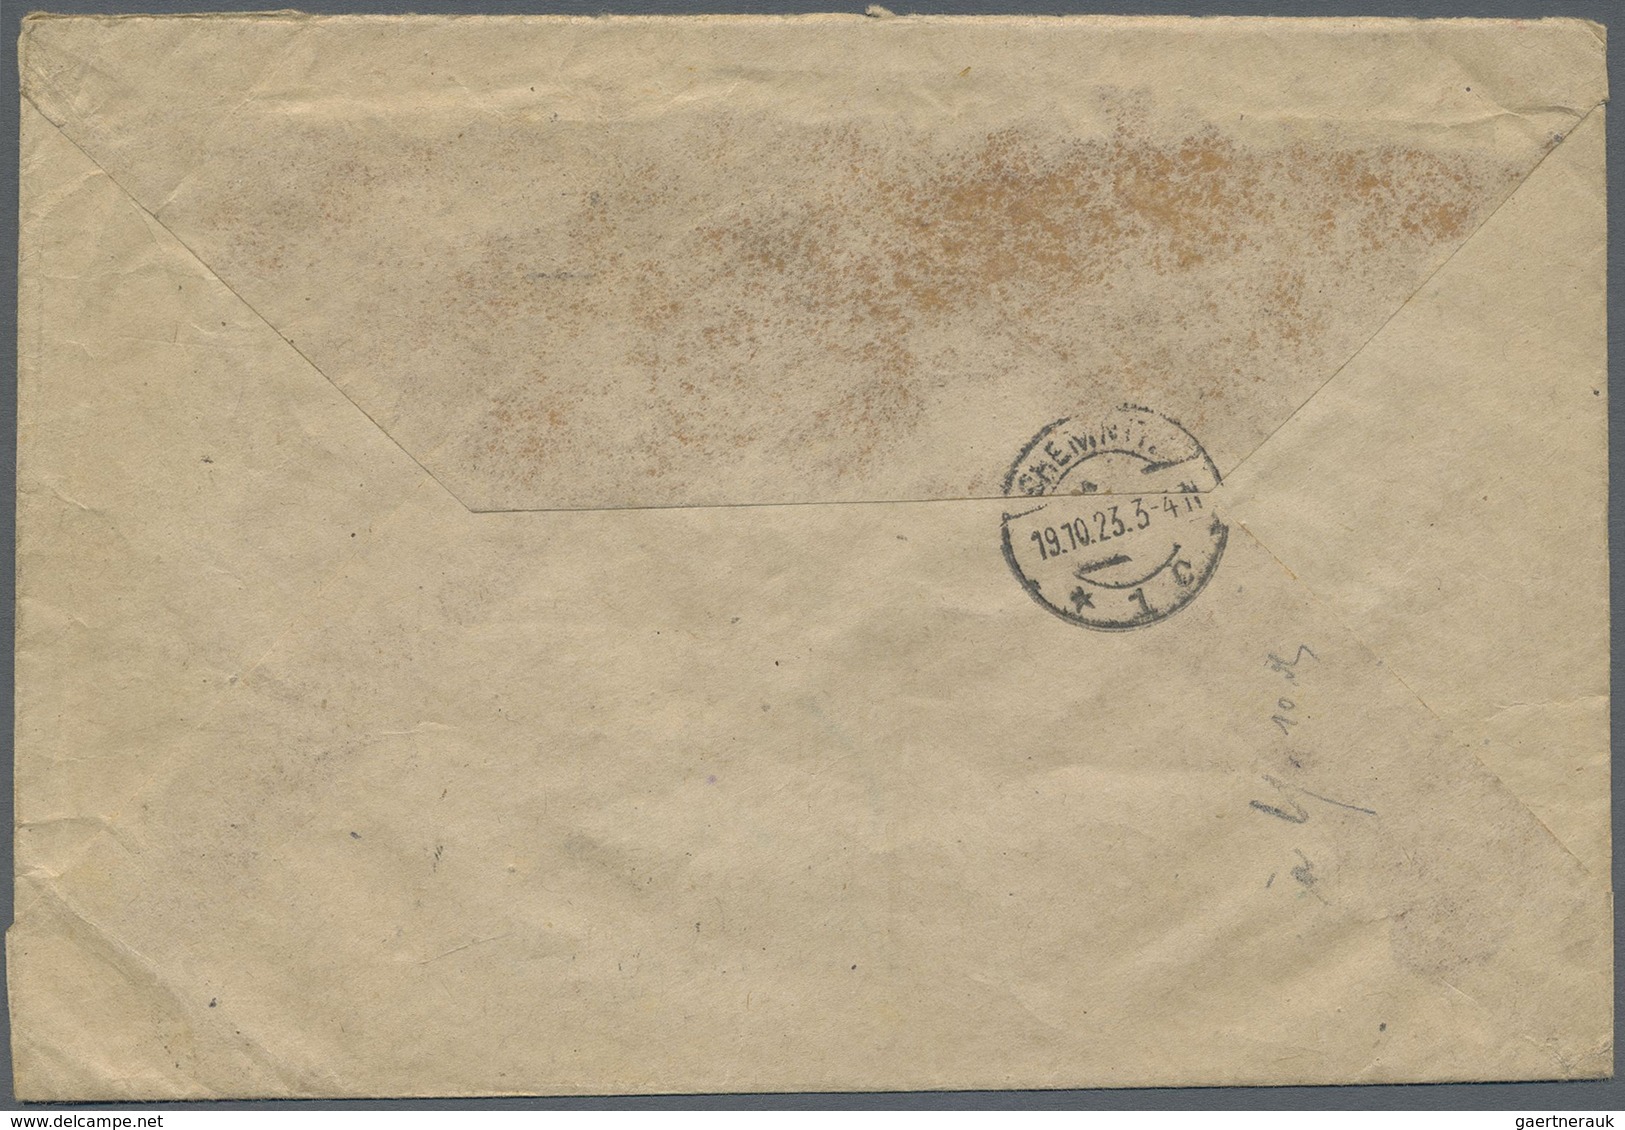 Br Danzig: 1923, "1 Million" auf 10.000 M zwei Werte auf zwei R-Briefen mit jeweils Zusatzfrankatur gel